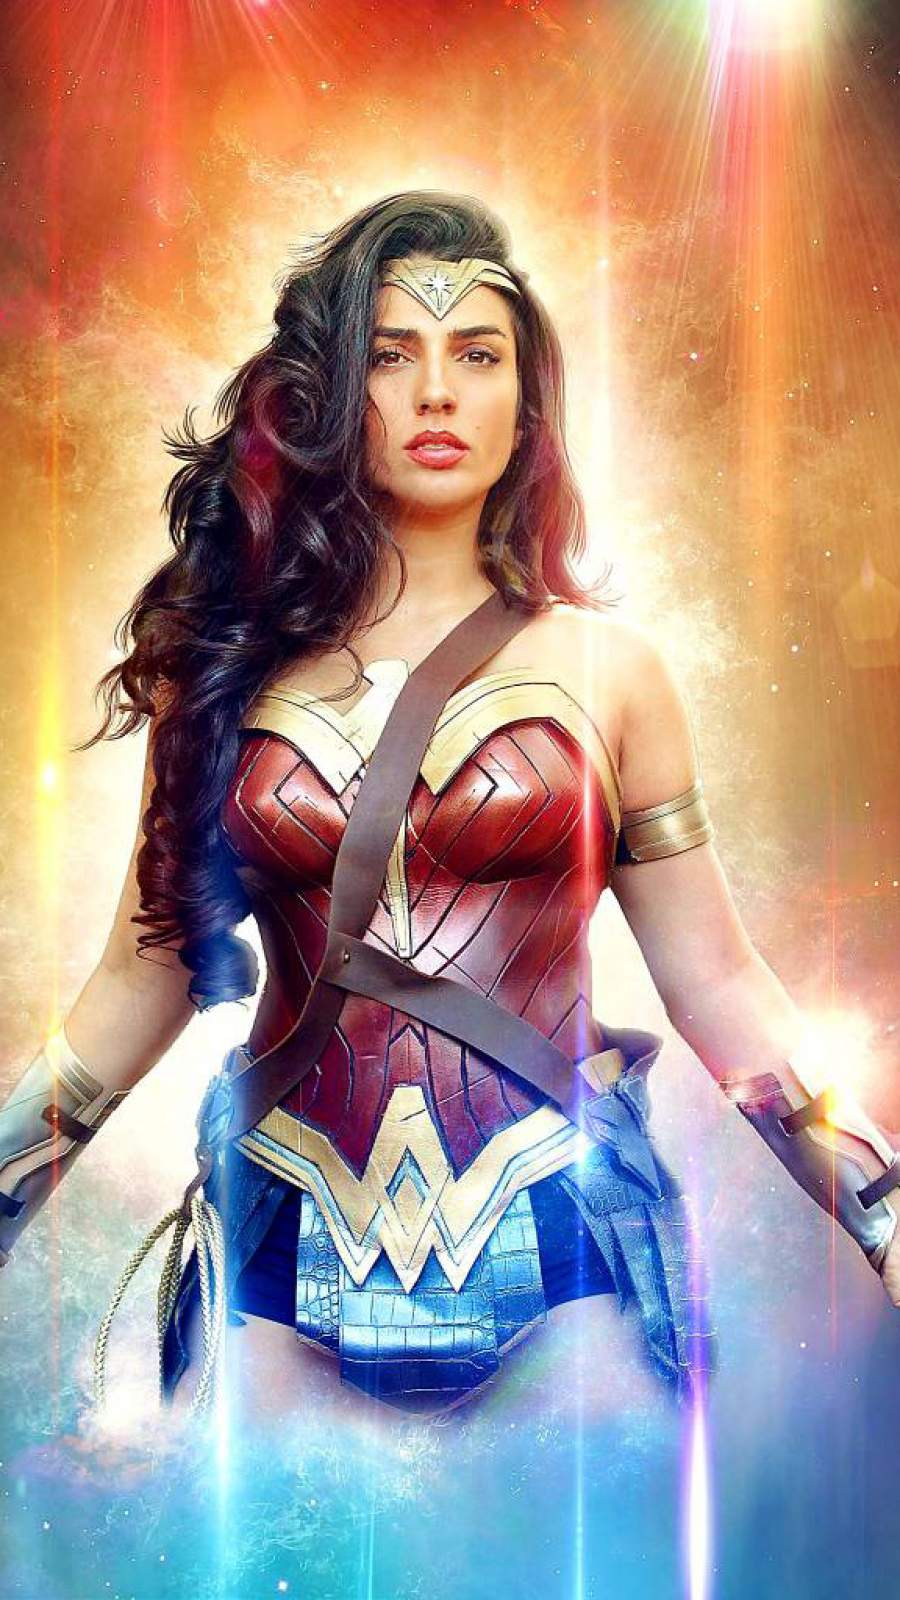 Beautiful Wonder Woman iPhone Wallpaper .hdwallpaperfx.com